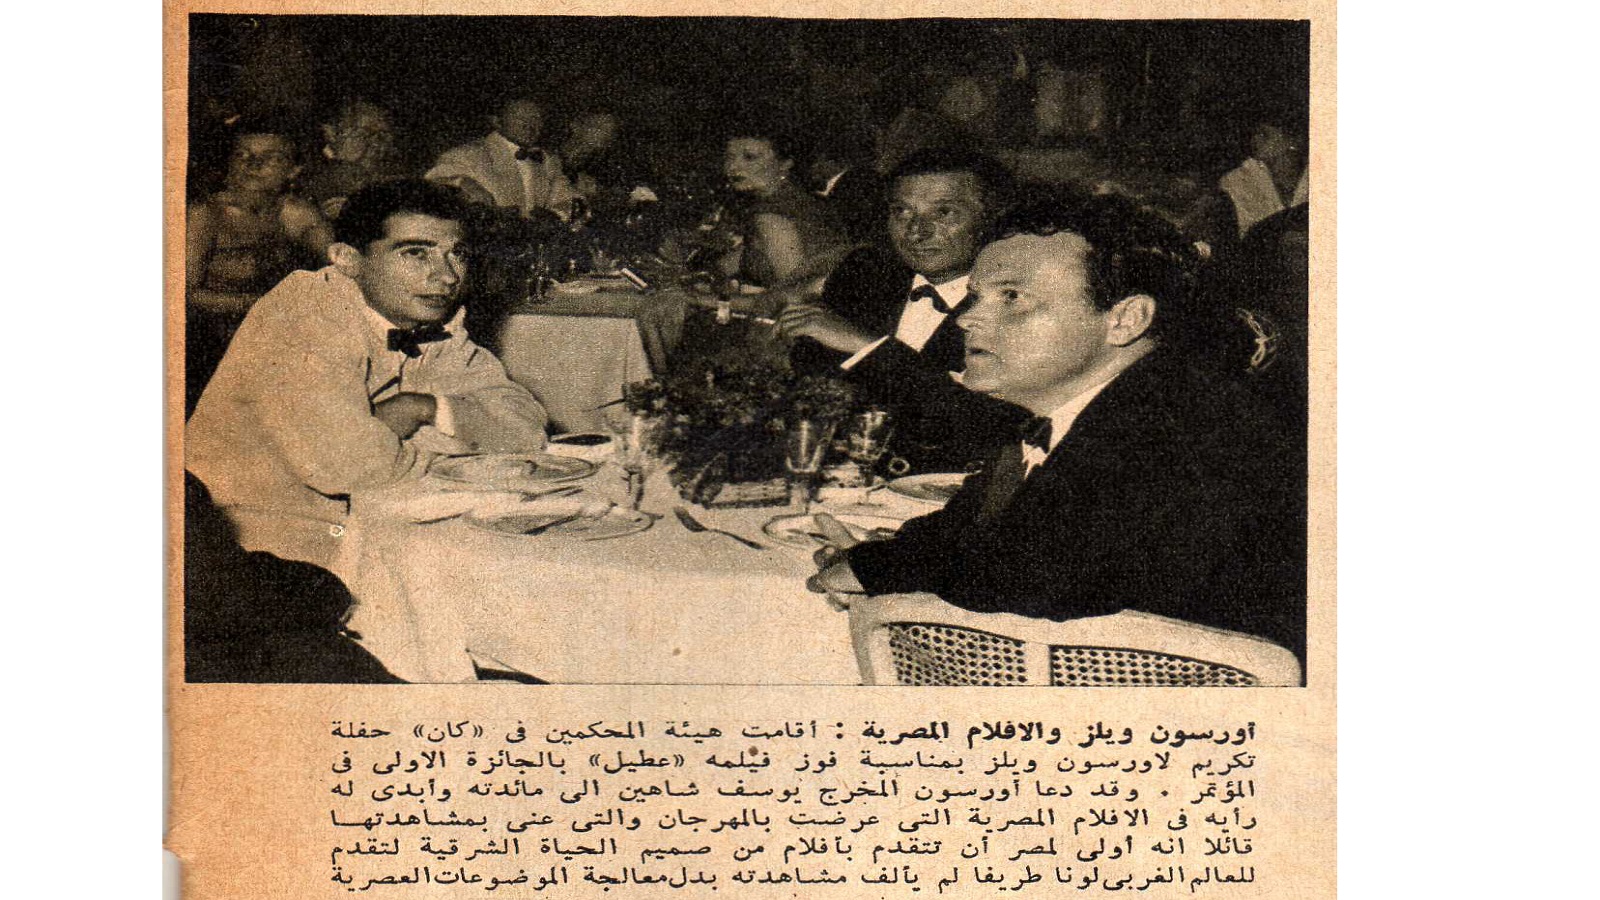   مع أورسون ويلز عند عرض "ابن النيل"، 1952. 